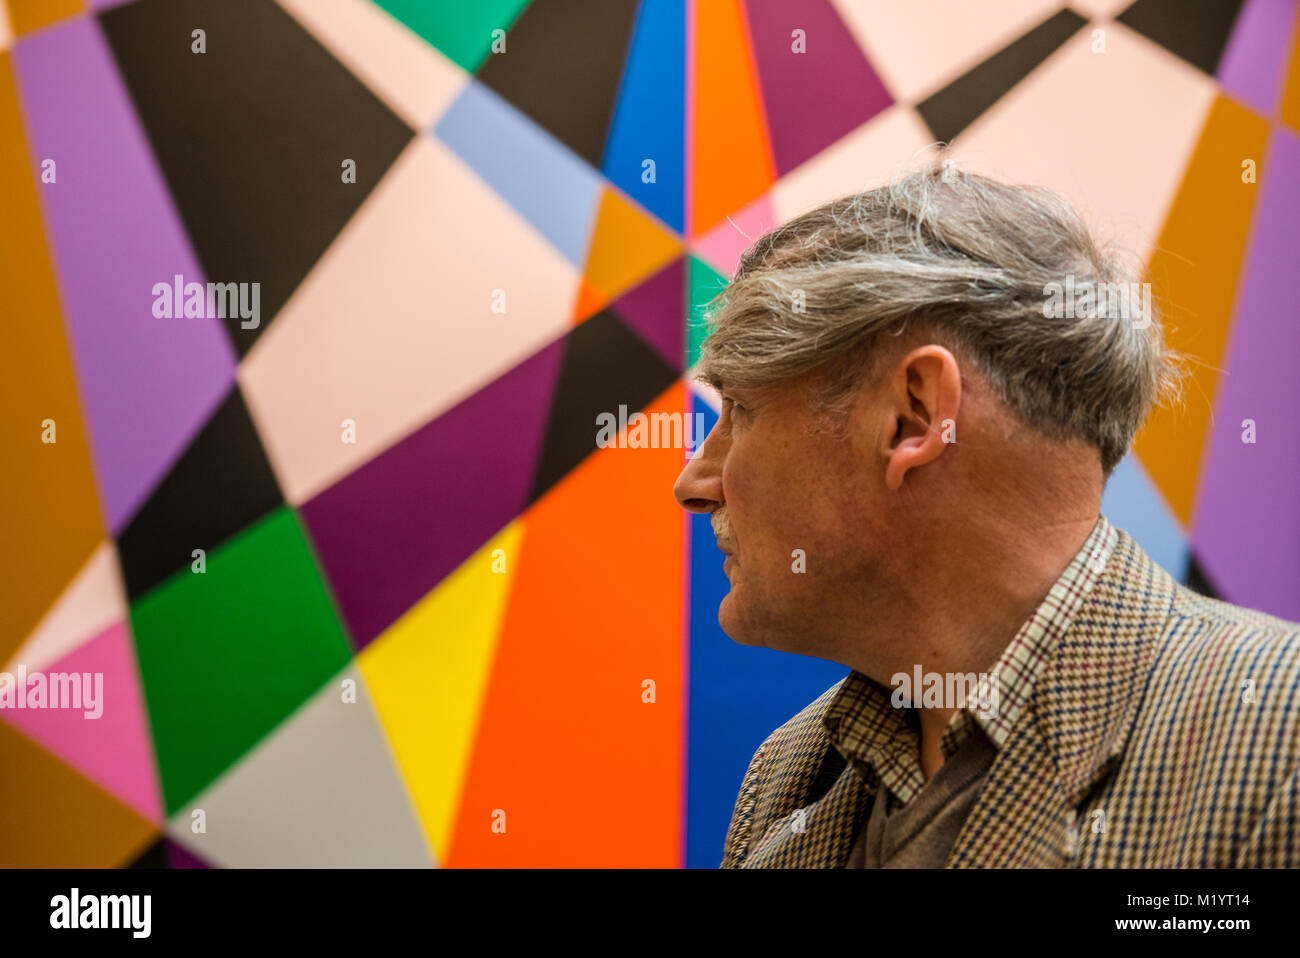 L'homme à l'égard d'art géométrique aux couleurs vives, Galerie d'Art Moderne de Leeds, Leeds, Angleterre Banque D'Images